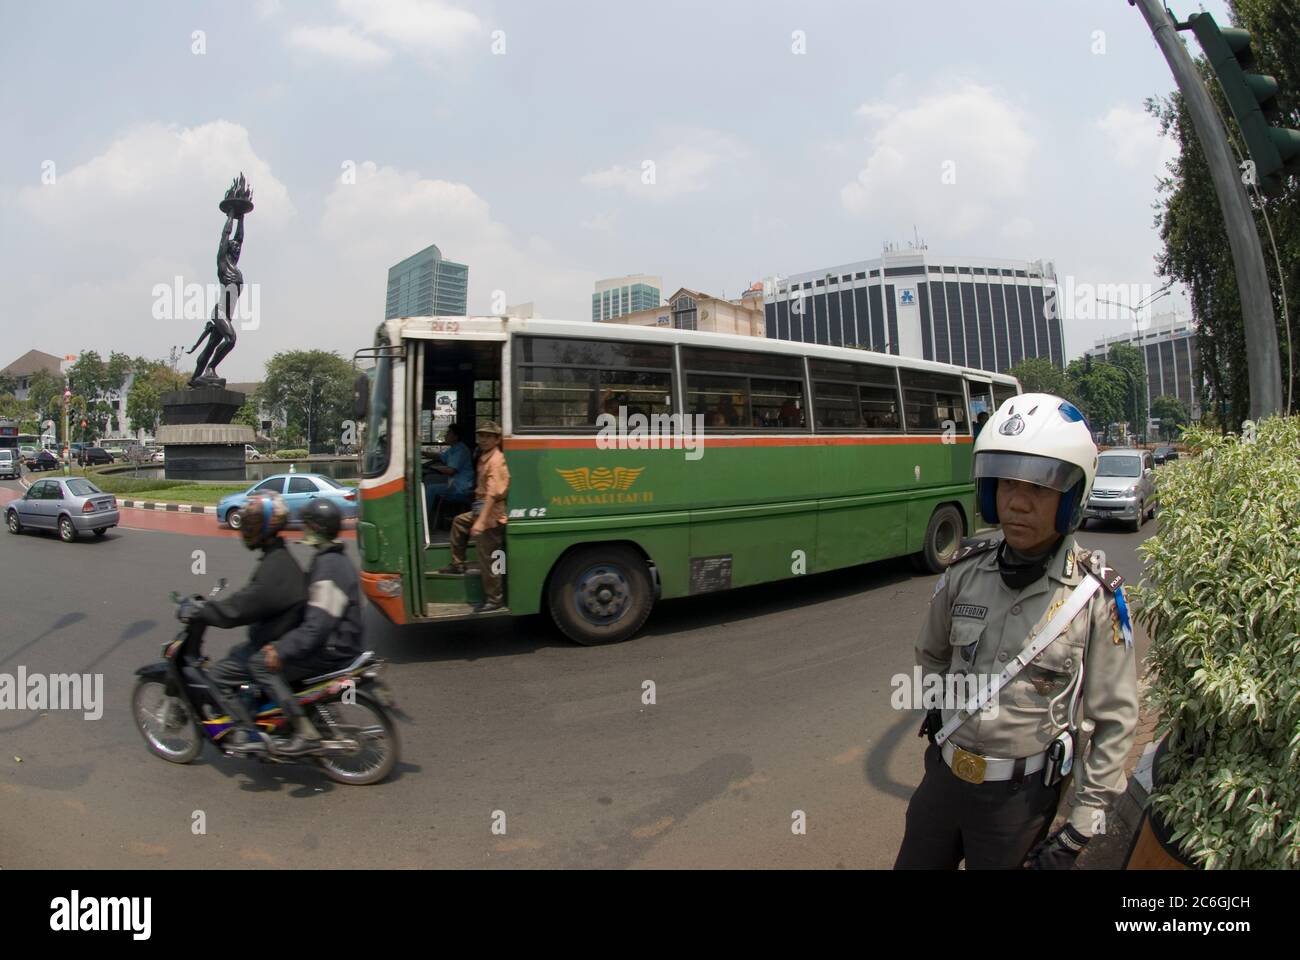 Bus vorbei Polizist am Kreisverkehr mit Patung Pemuda Youth Monument Statue auch bekannt als Pizza man Statue, Jakarta, Indonesien Stockfoto